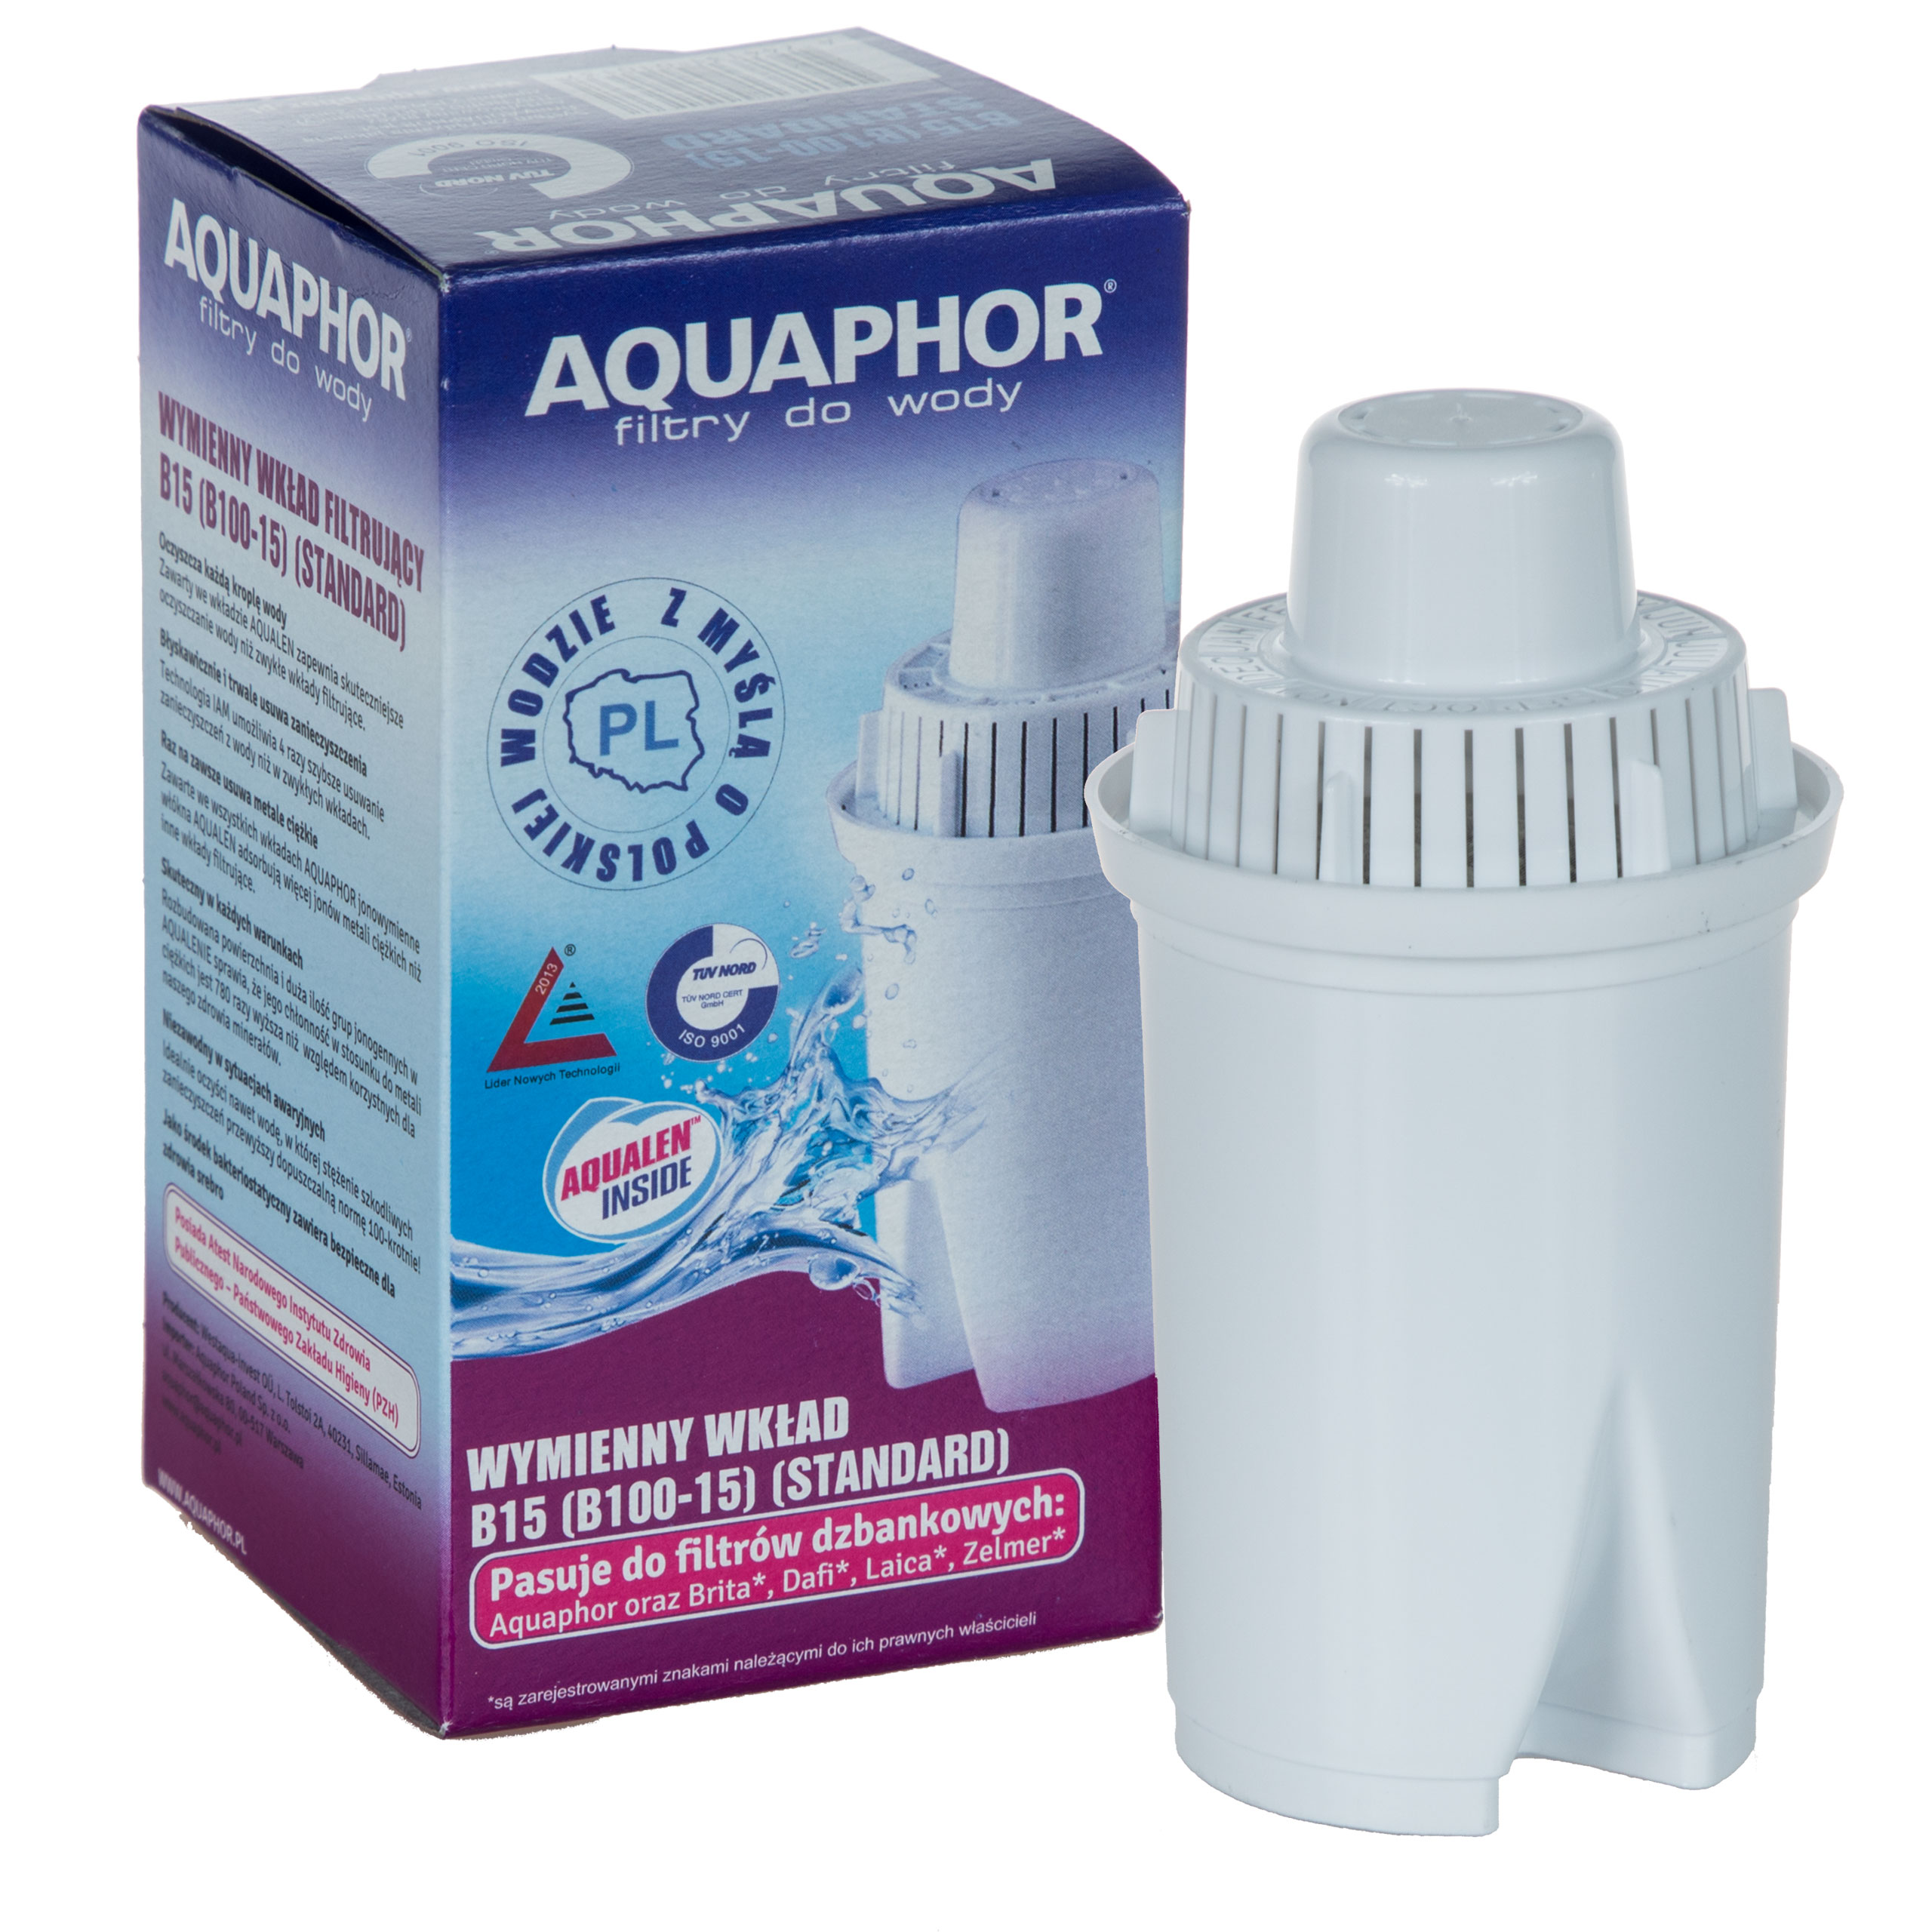 Фильтр для воды аквафор 5. Фильтр Аквафор в 100-15. Фильтр для воды Аквафор в100-15. Aquaphor Filter Cartridge b15 (b100-15). Фильтр Аквафор 100.